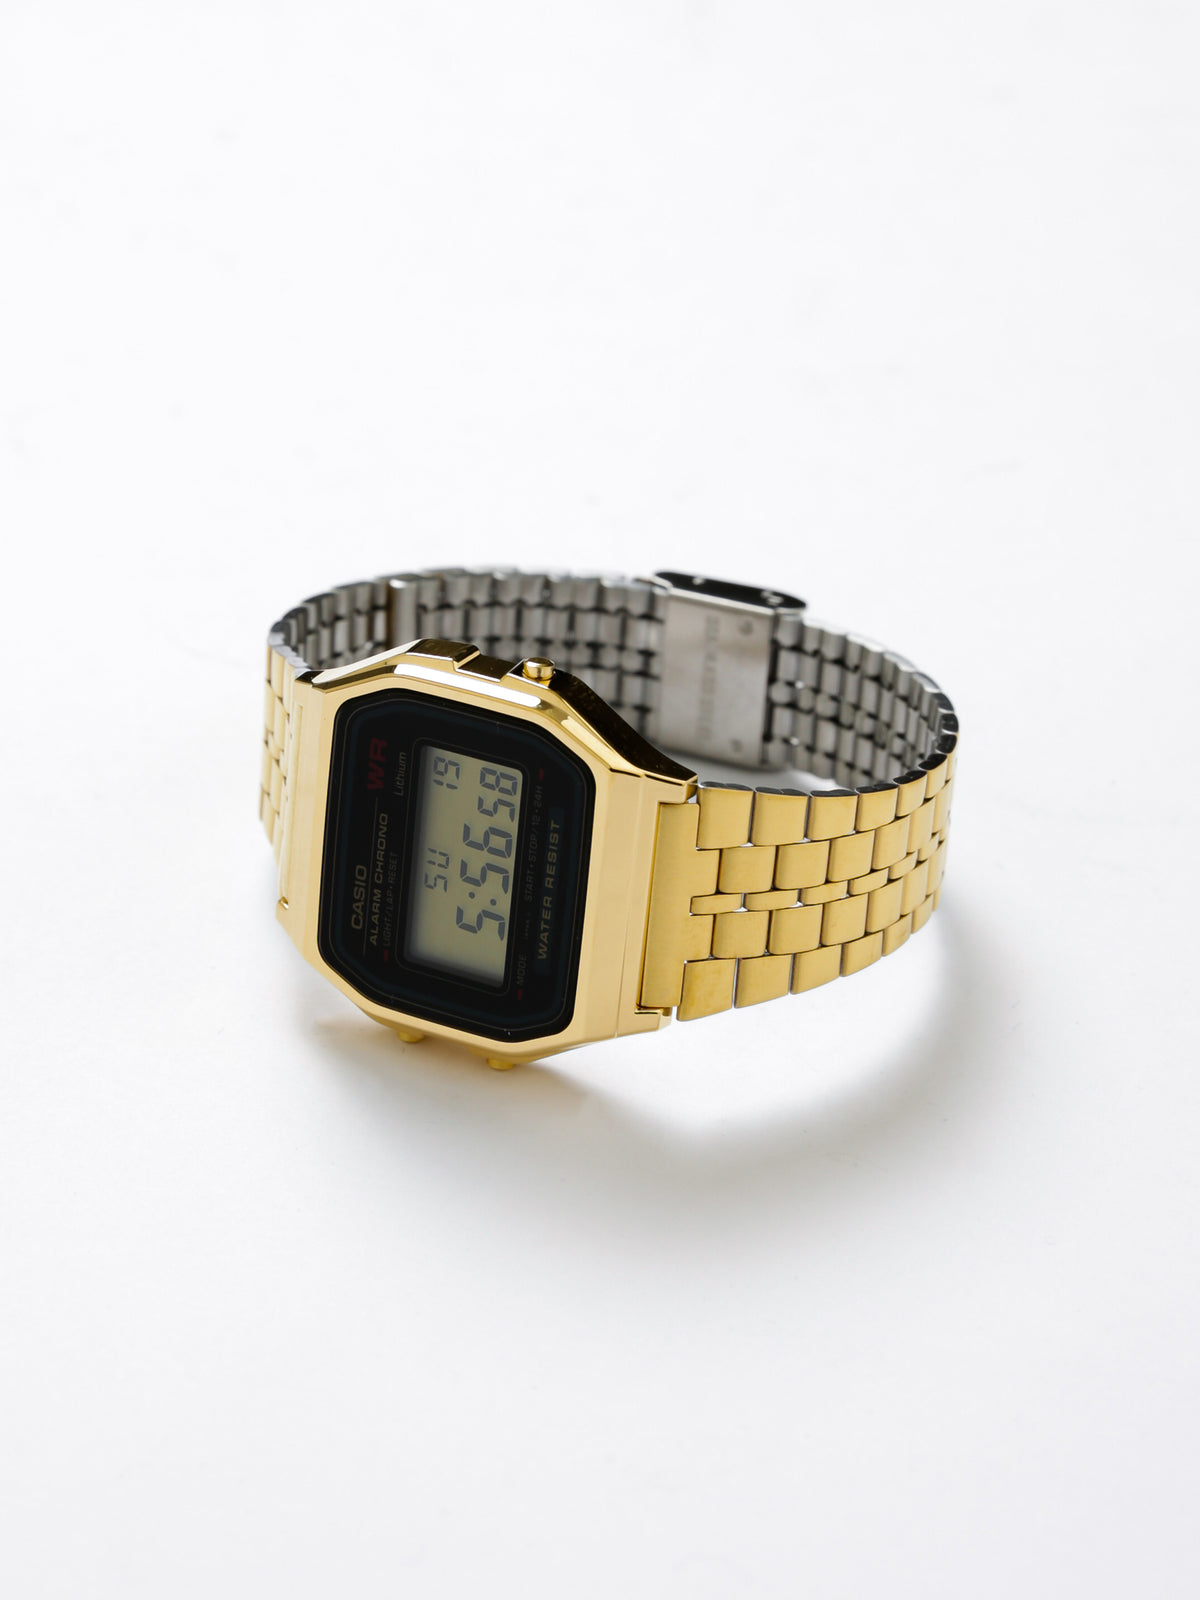 Vintage Digital Water Resistant Watch in Gold